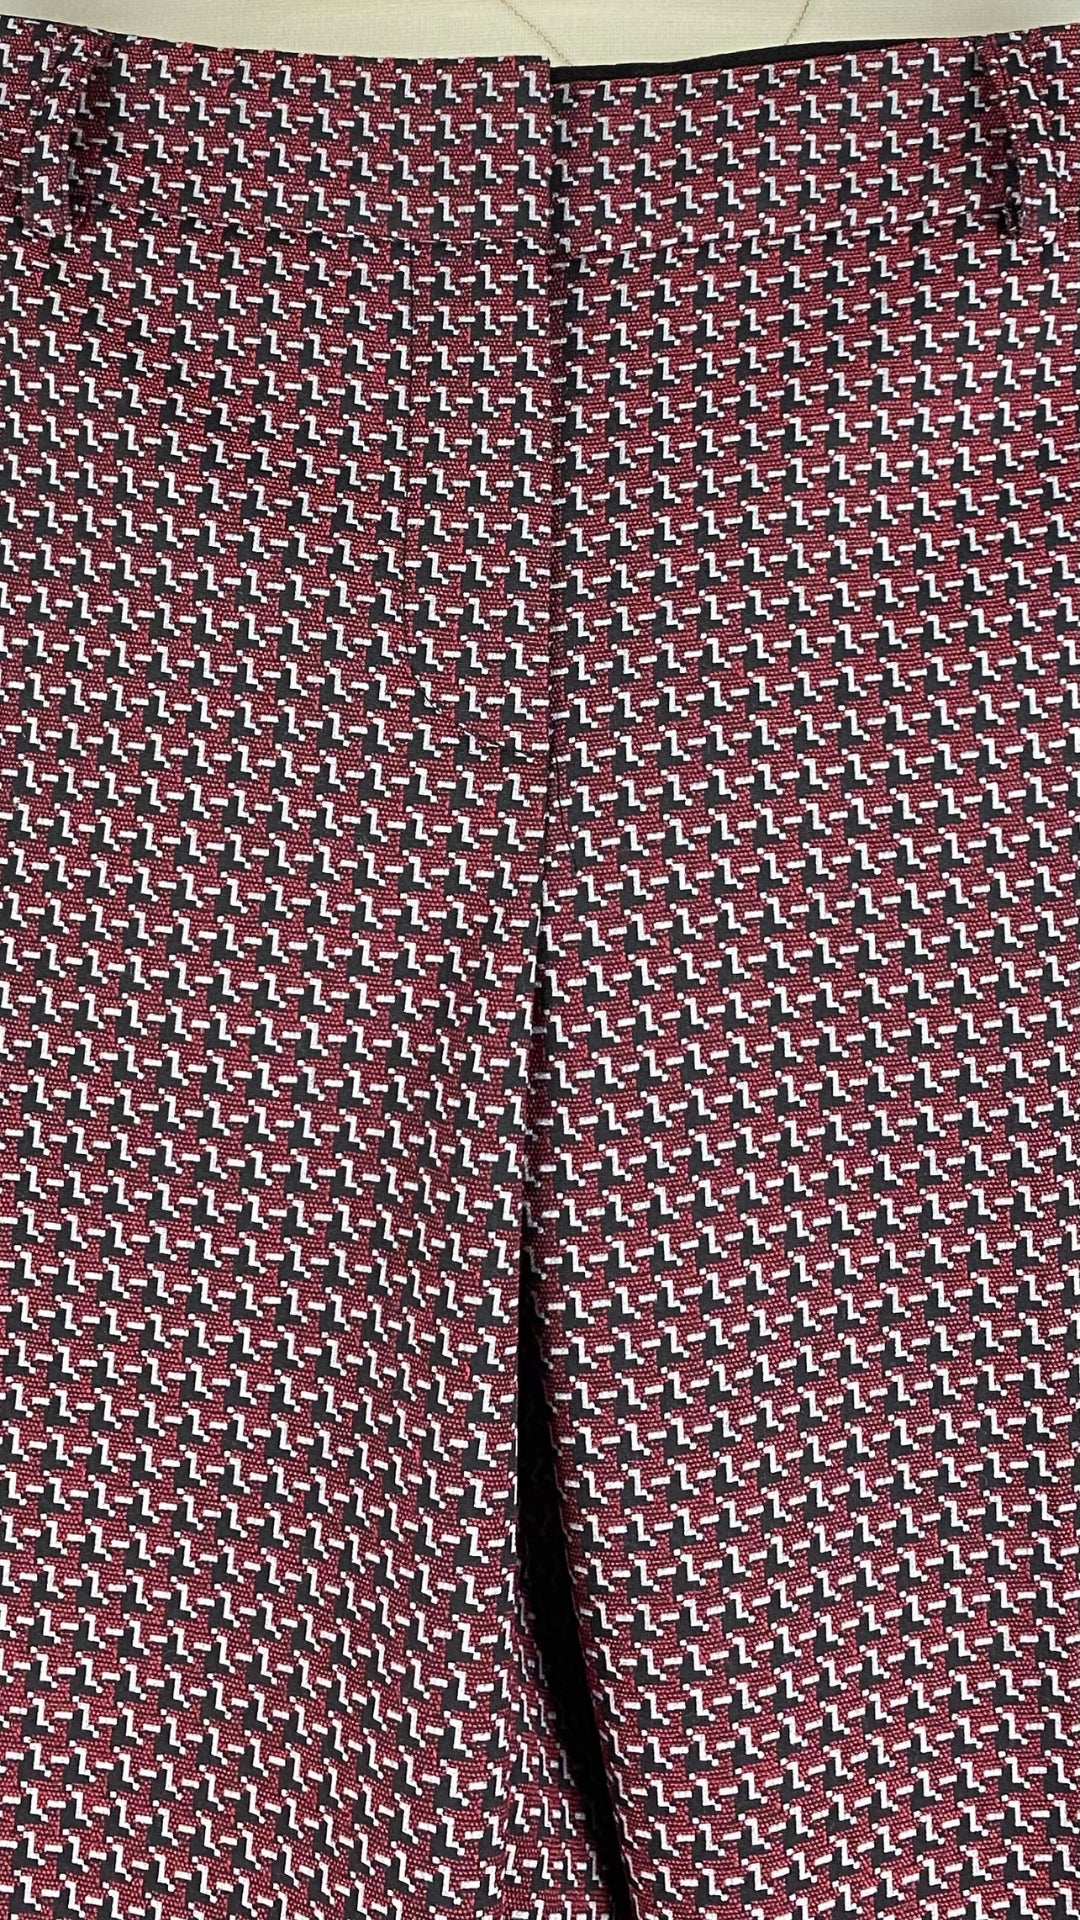 Pantalon coupe droite jacquard à motifs rouge, noir, blanc, Judith & Charles, taille 4. Vue de la taille.